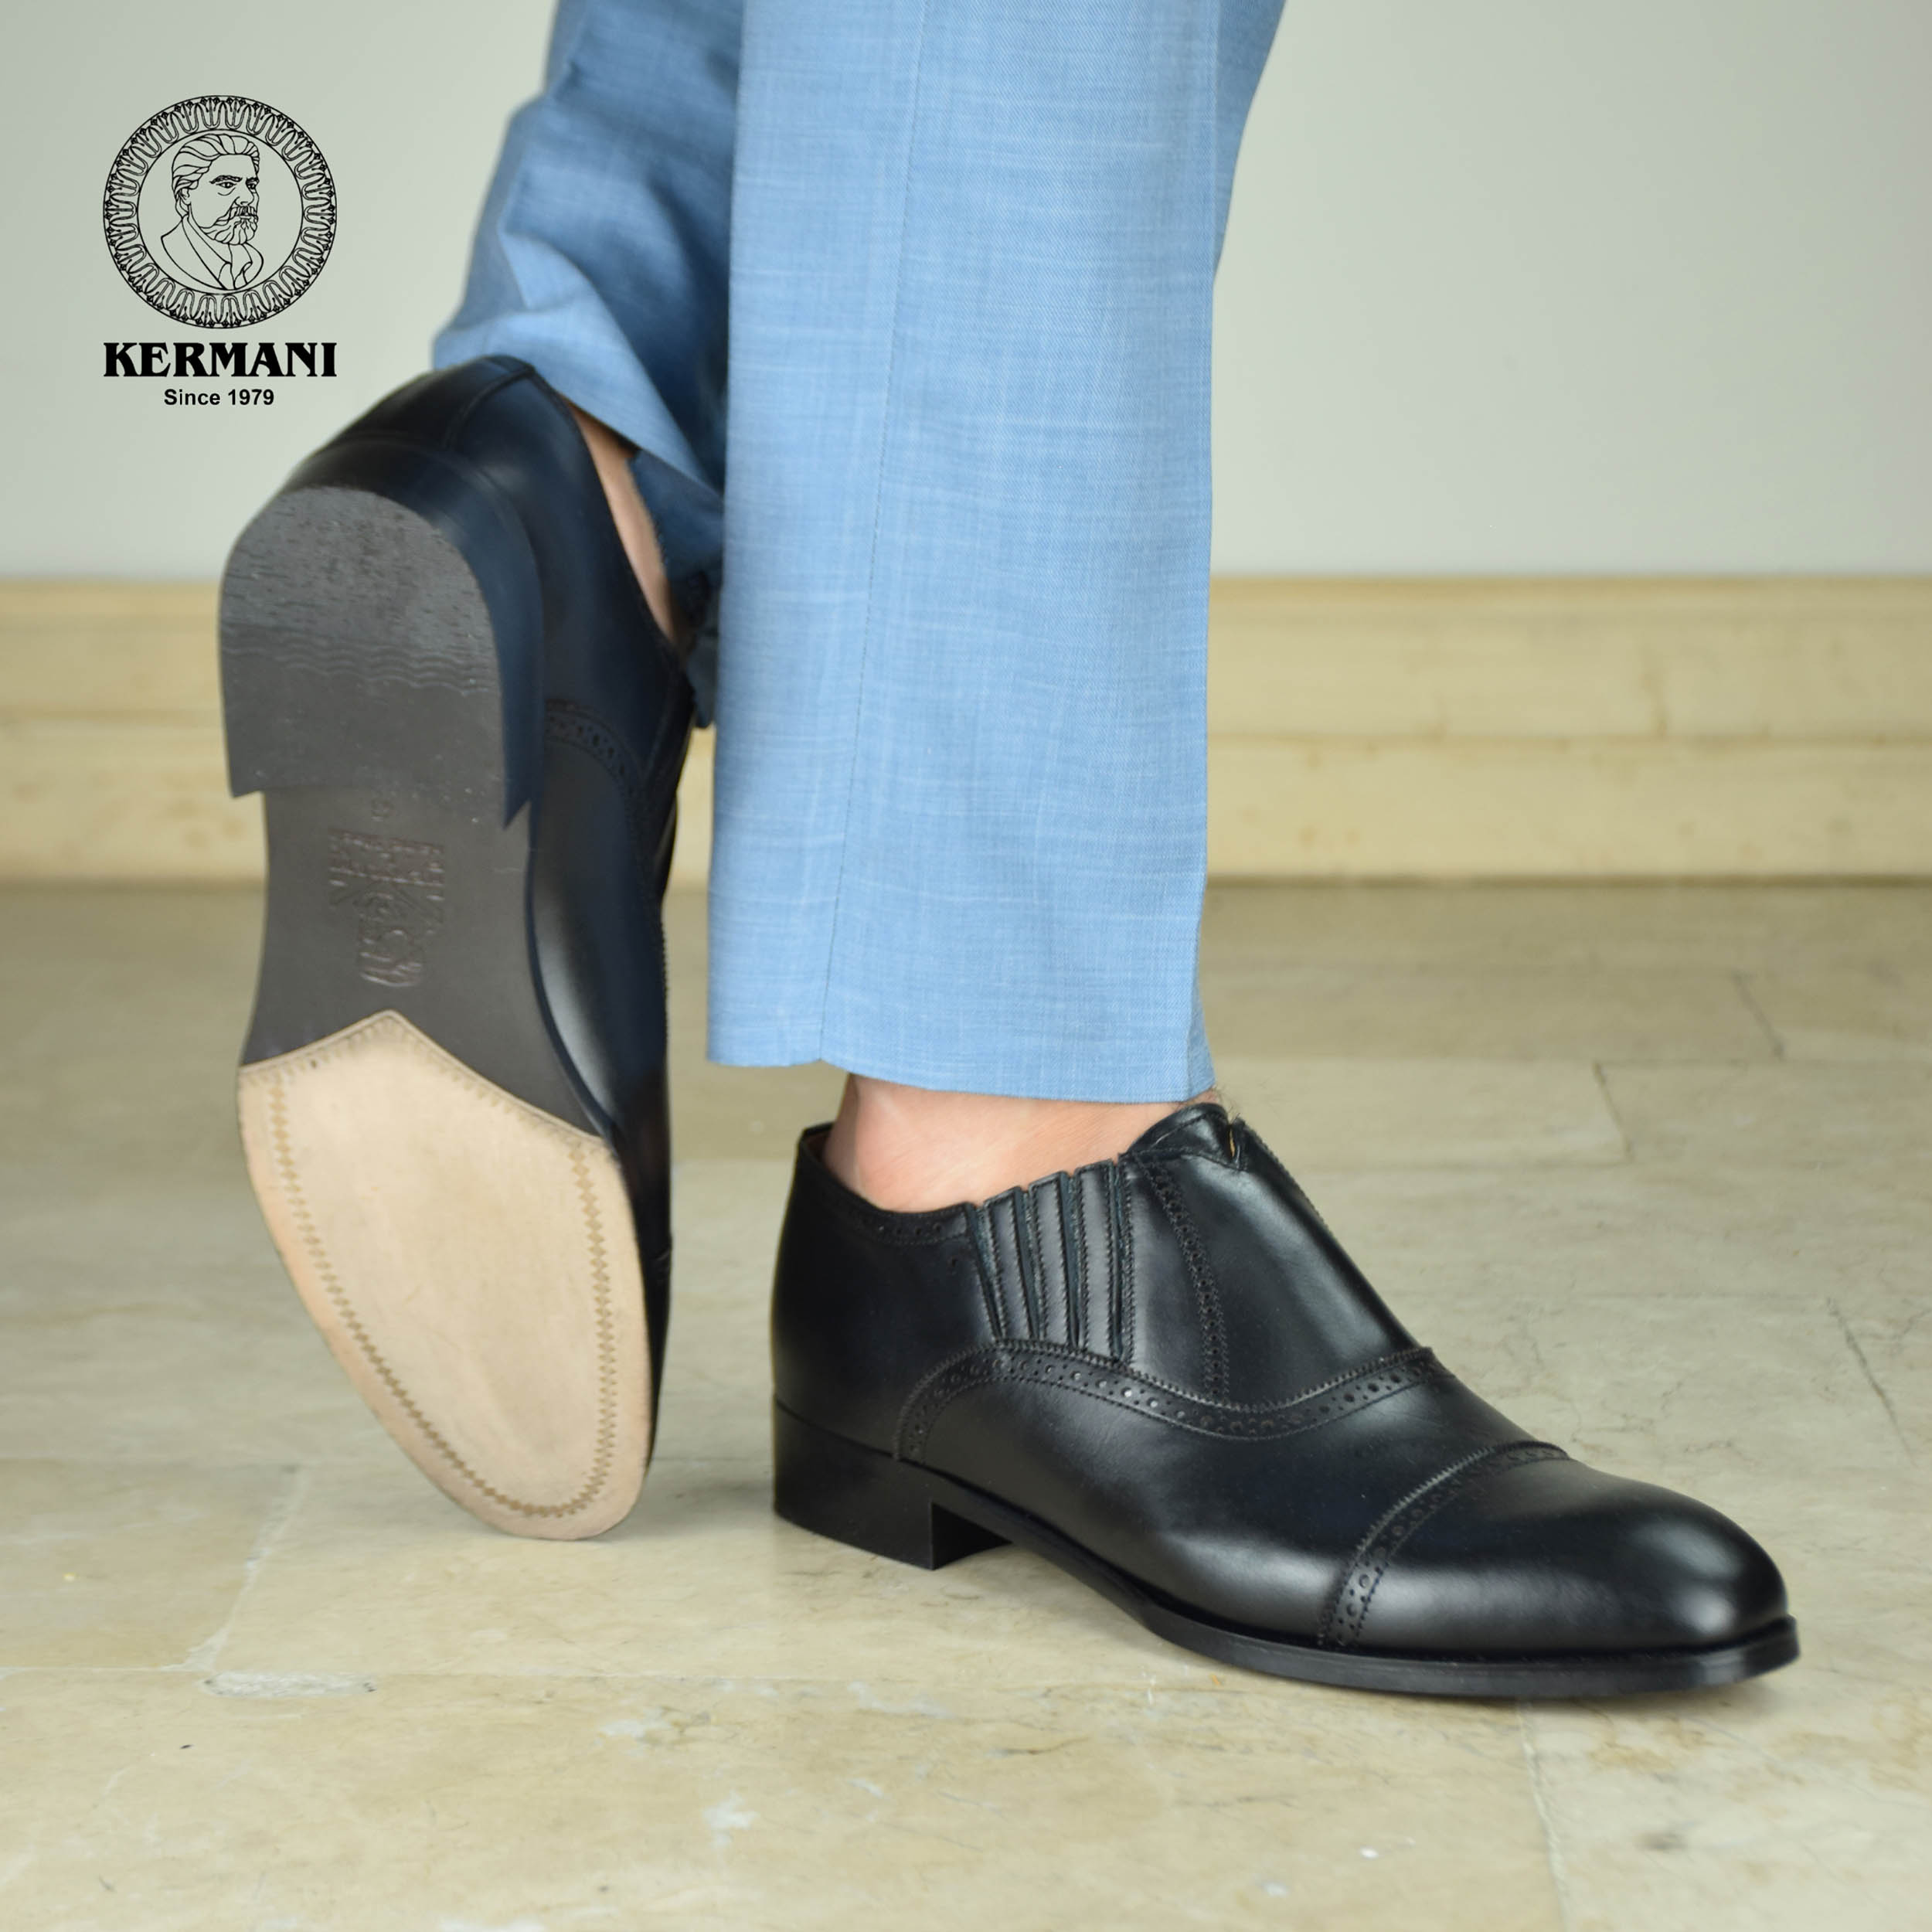 کفش مردانه کرمانی مدل چرم دستدوز طبیعی کد 1070 رنگ مشکی -  - 3